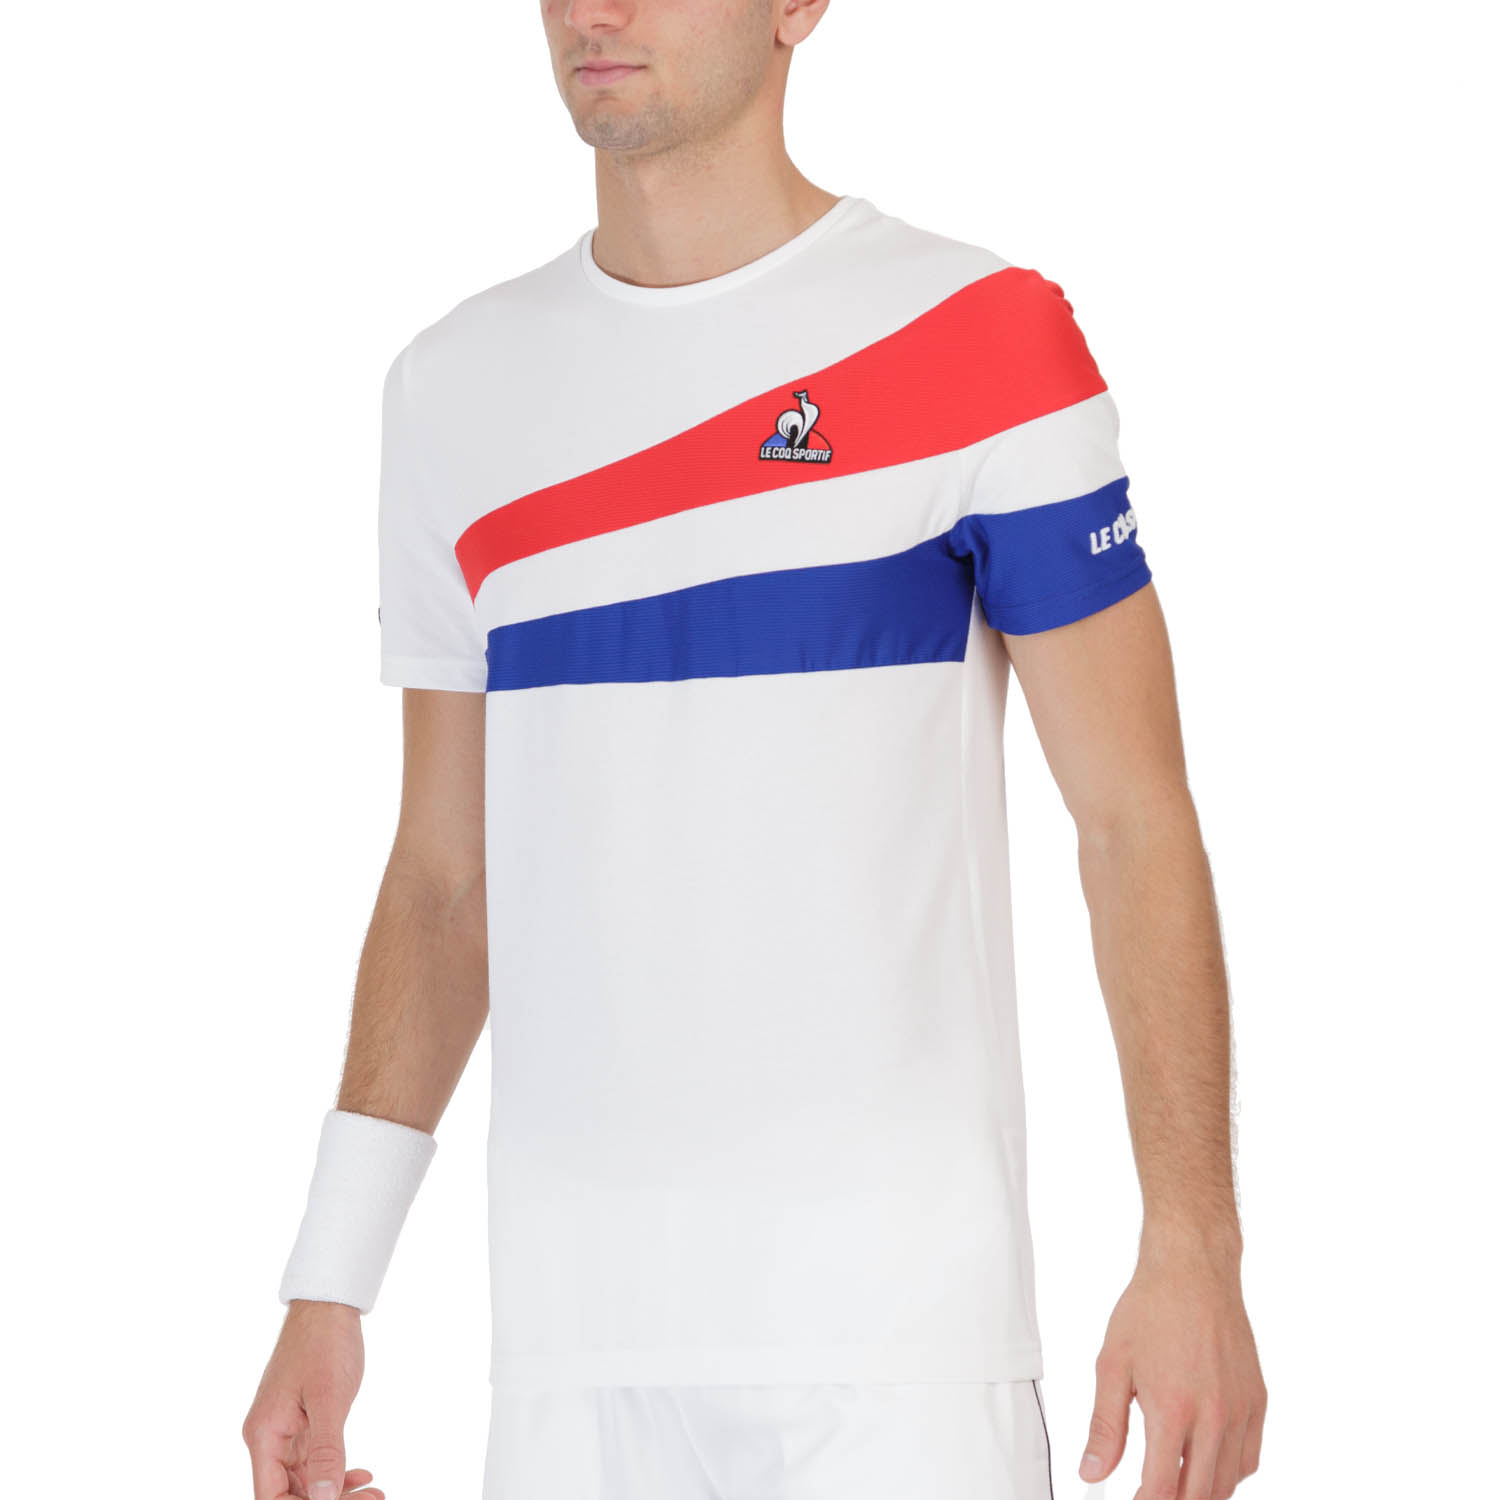 Le Coq Sportif Performance Men's Tennis T-Shirt - White